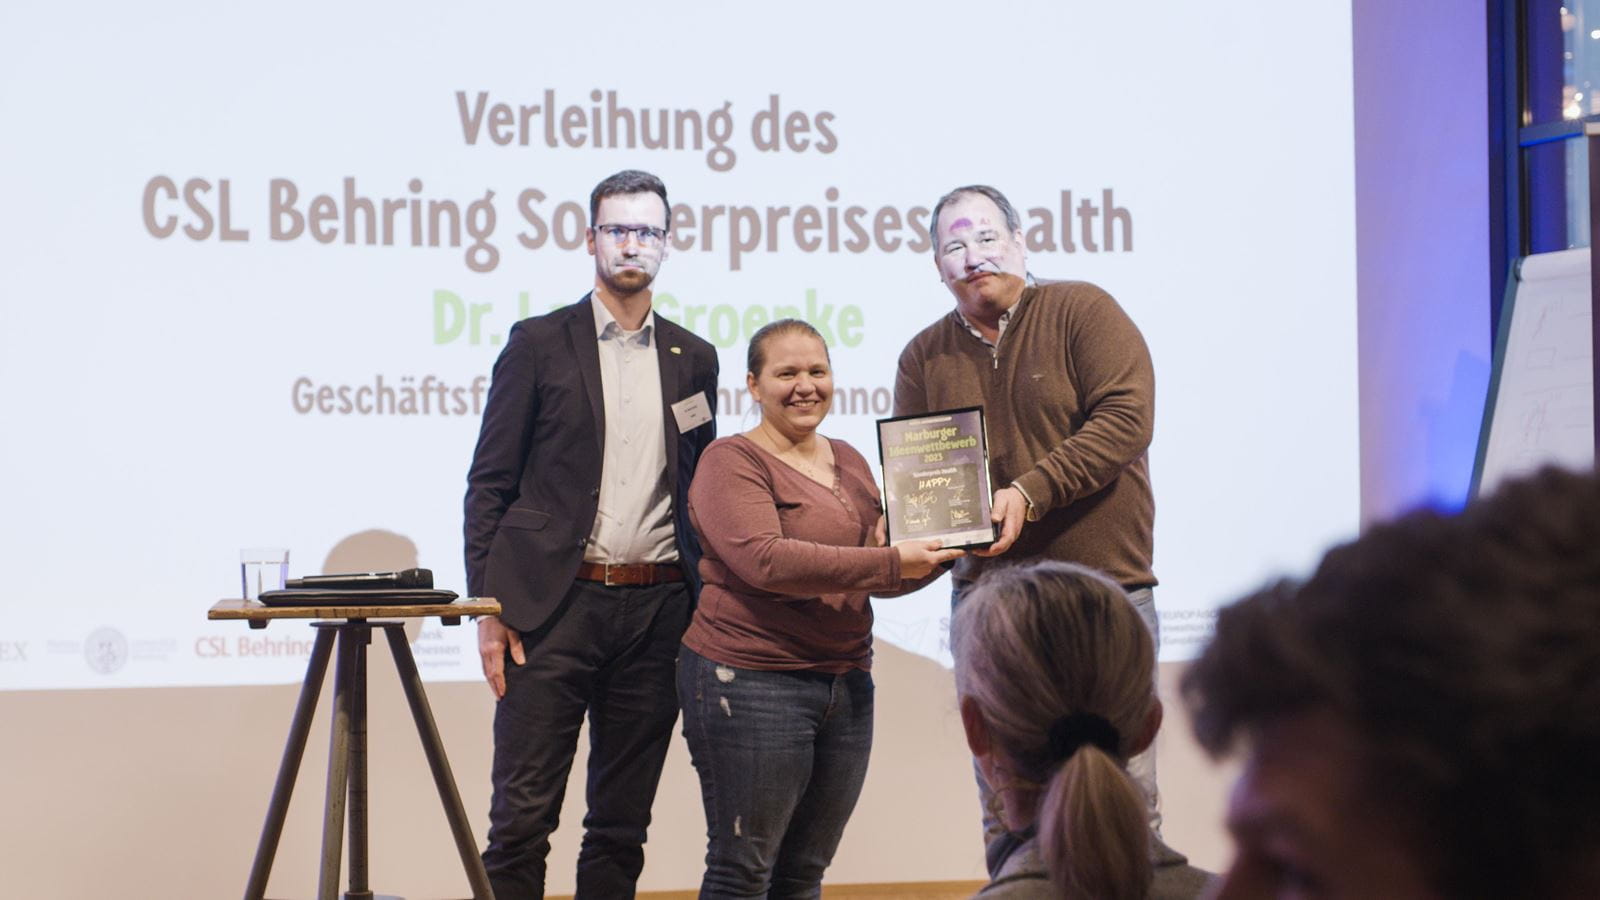 Dr. Lars Groenke überreicht den Sonderpreis "Health" am Marburger Ideenwettbewerb